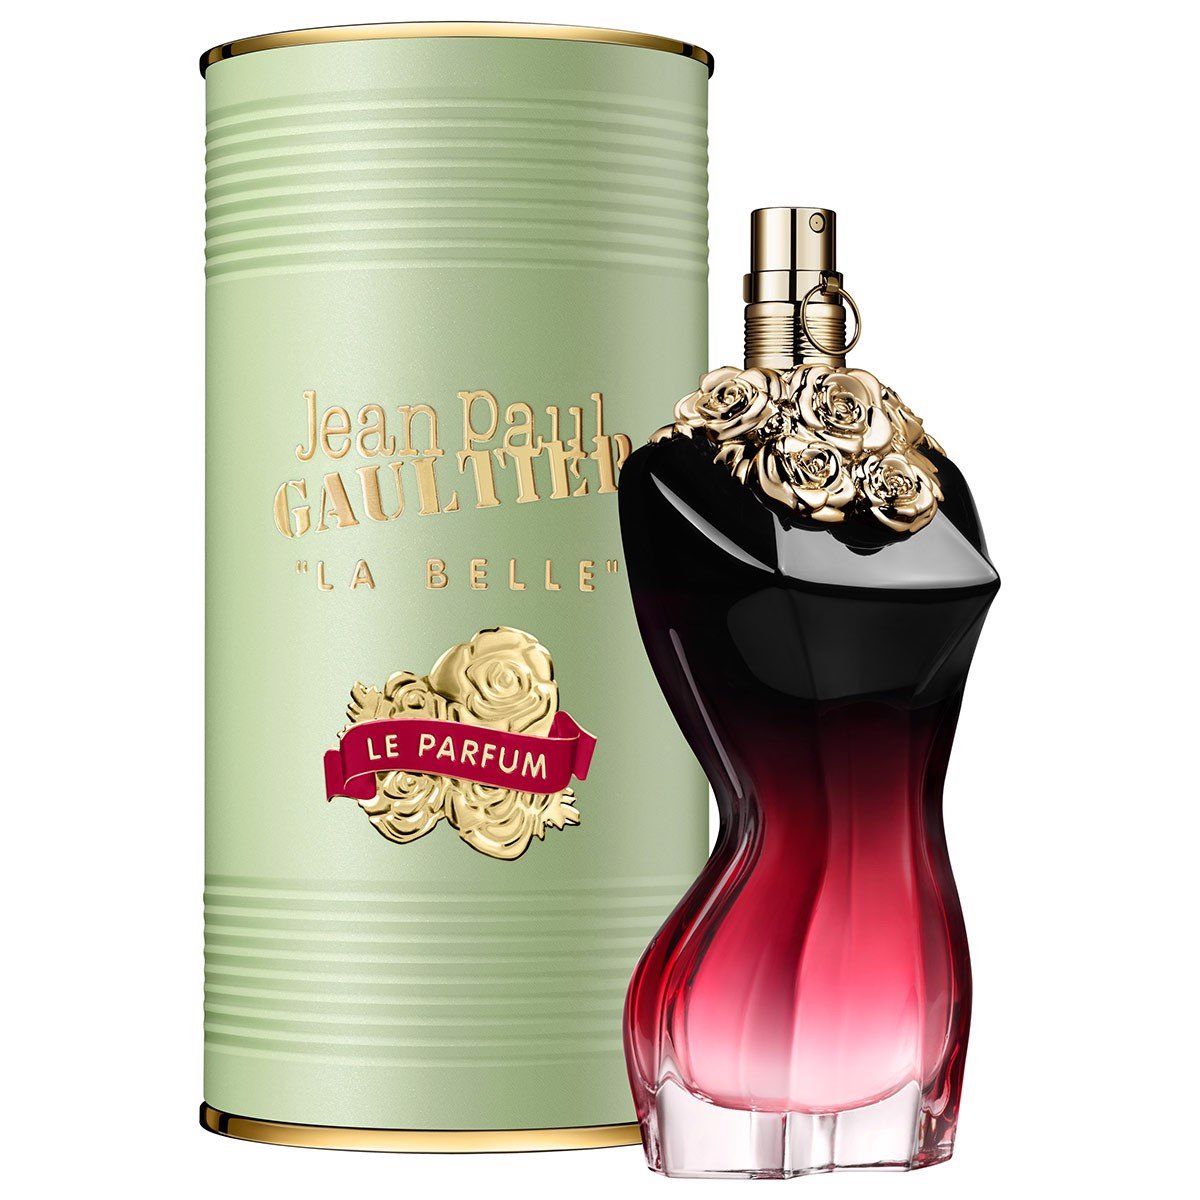  Nước hoa Jean Paul Gaultier La Belle Le Parfum 100ml 